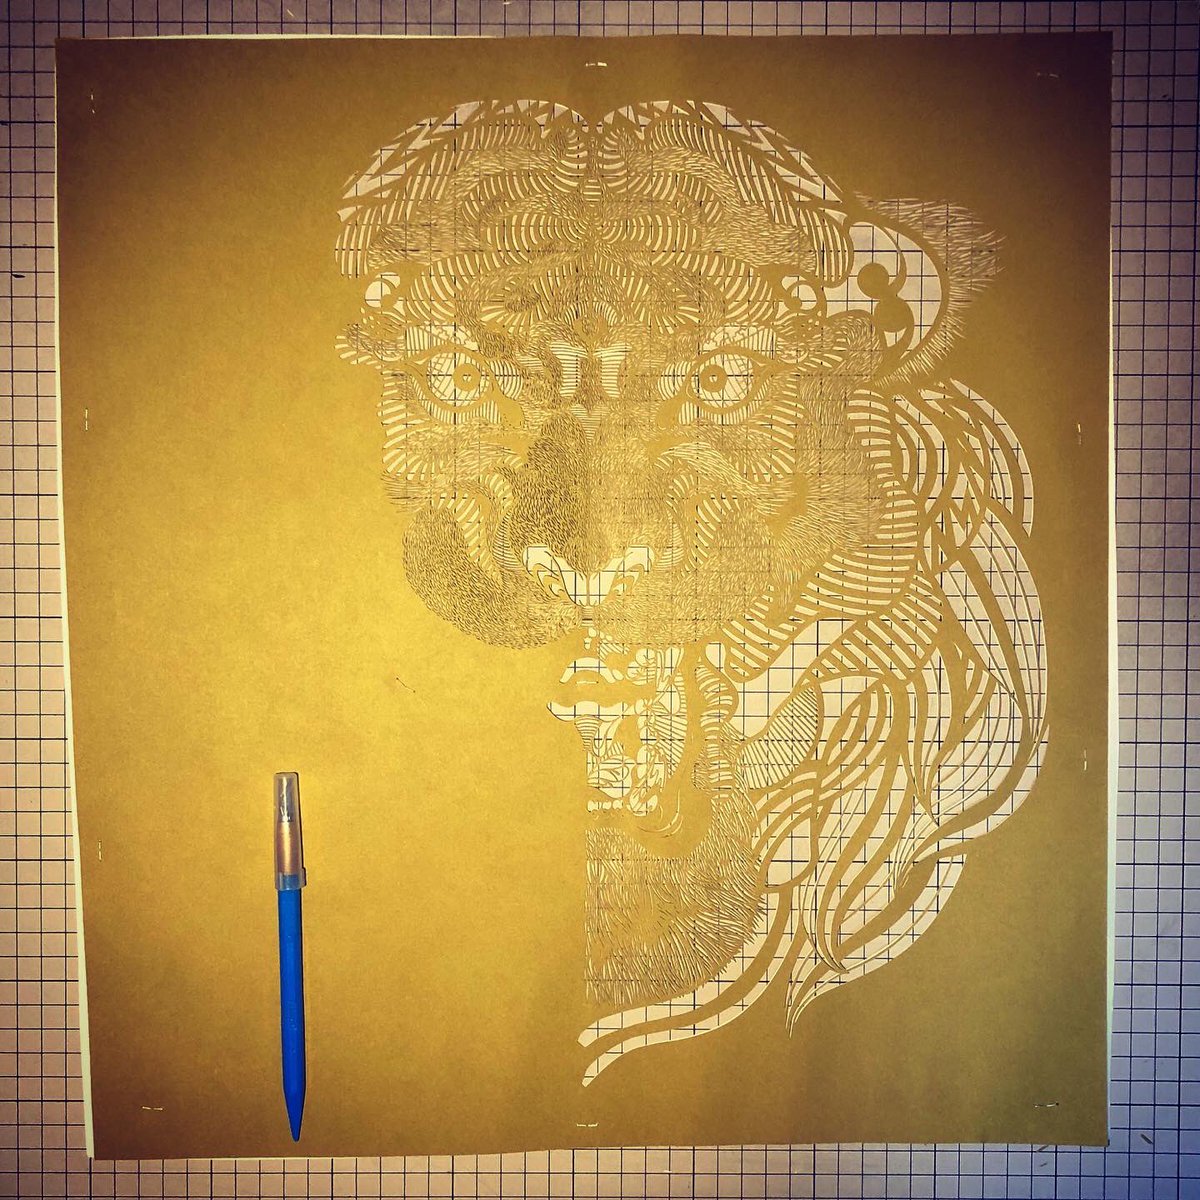 🐅🐅🐅
進捗

Today's papercuttingwork.
If you want to see the completed form of this work, please follow me.

#art #papercuttingart #切り絵 #illustration #イラスト #artist #artwork #japan #photo #photooftheday #photography  #虎 #トラ #tiger 